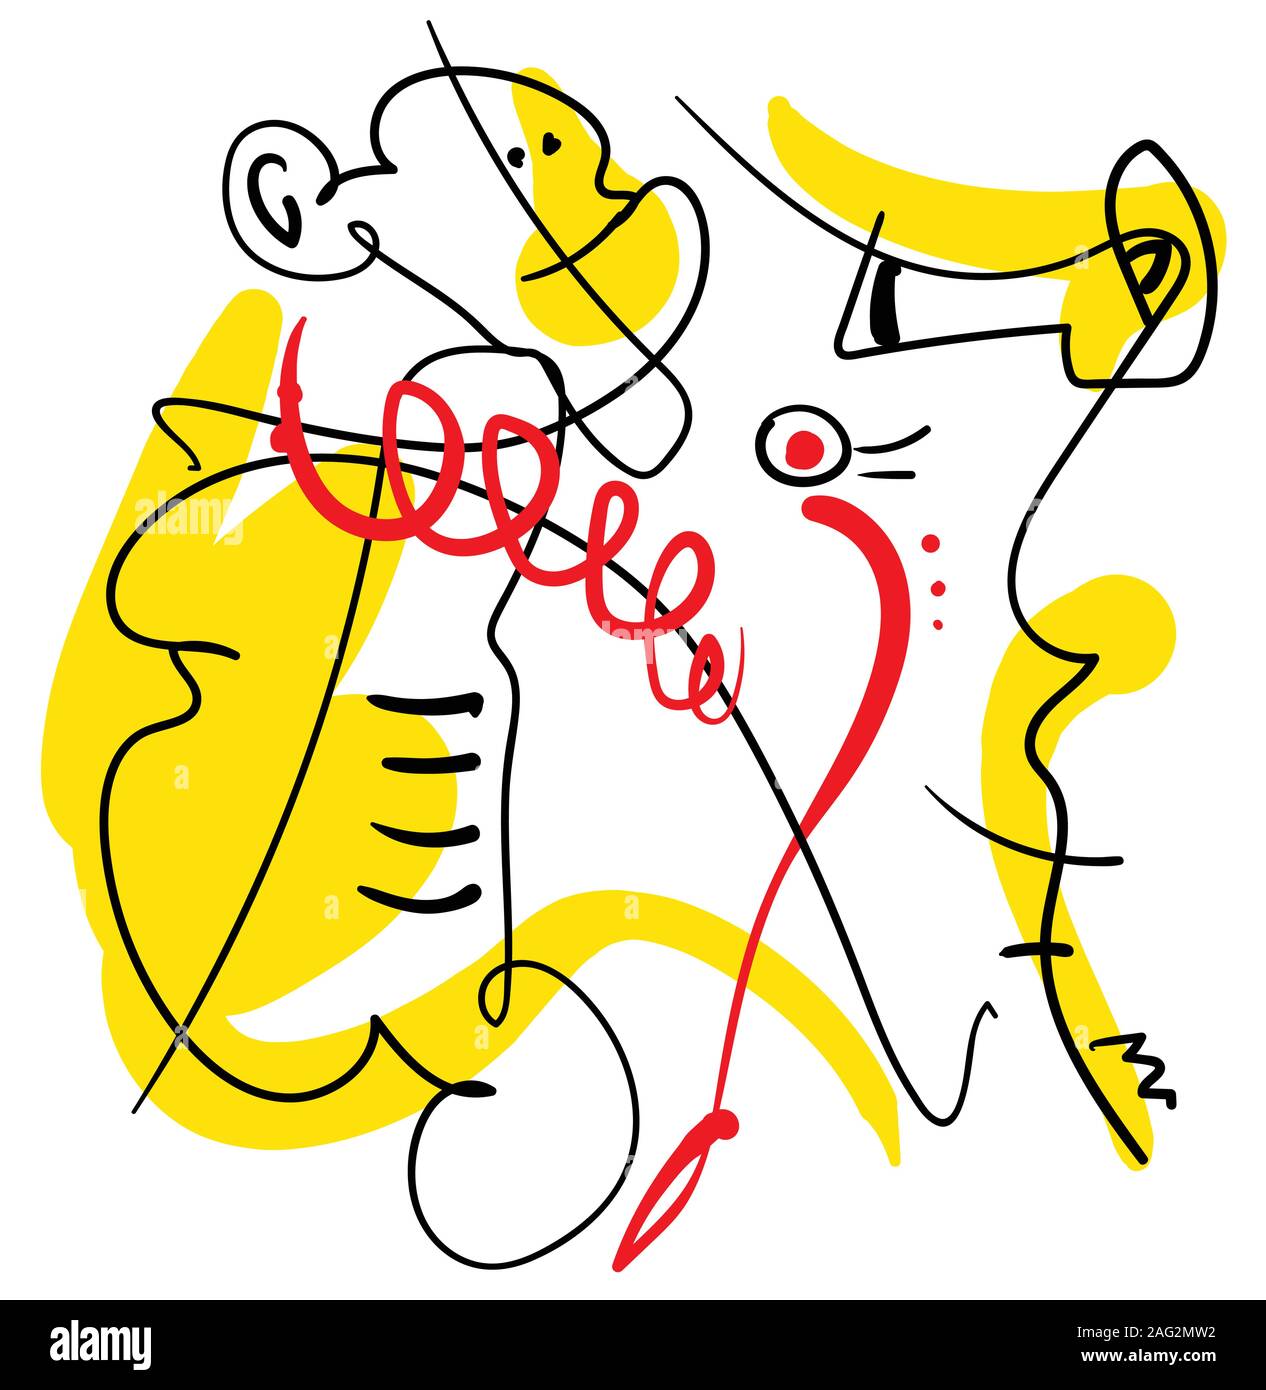 Abstrakt eine Linie zeitgenössische Komposition, schwarz, gelb und rot, surreal minimalistischen skizzieren Person mit Affen und Seepferdchen Stock Vektor